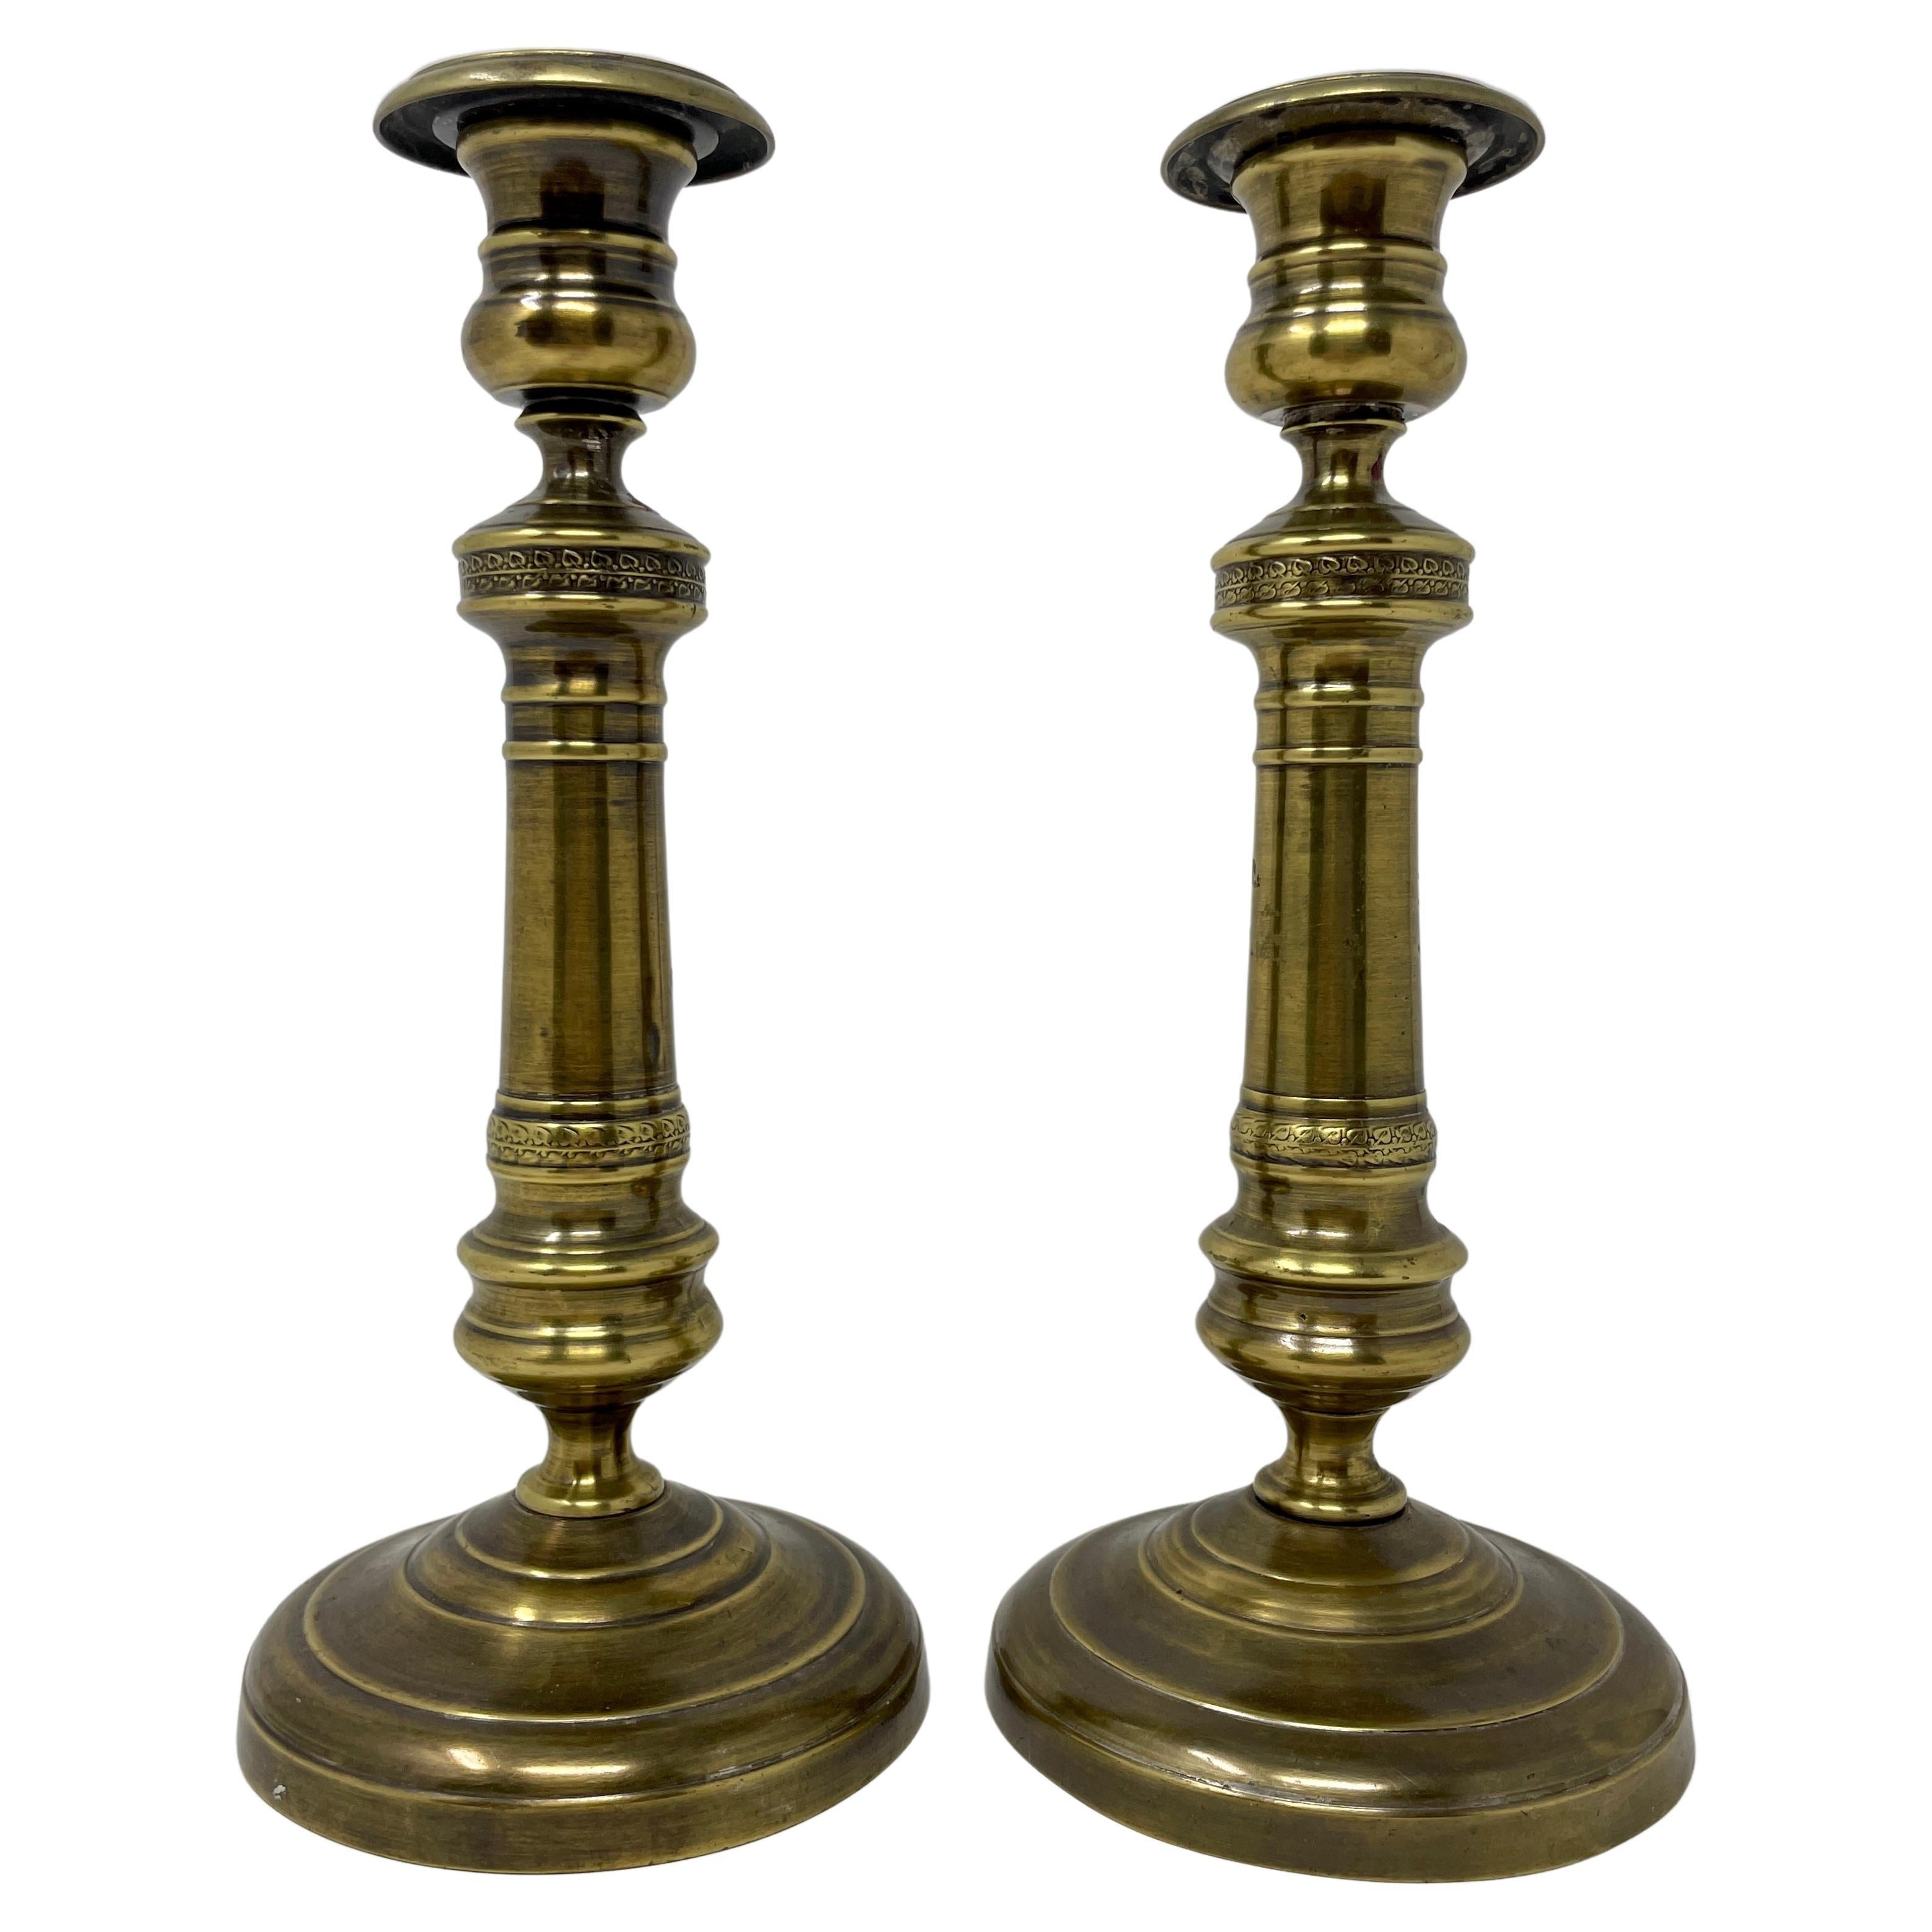 Paire de chandeliers anglais anciens en laiton, vers 1800-1810